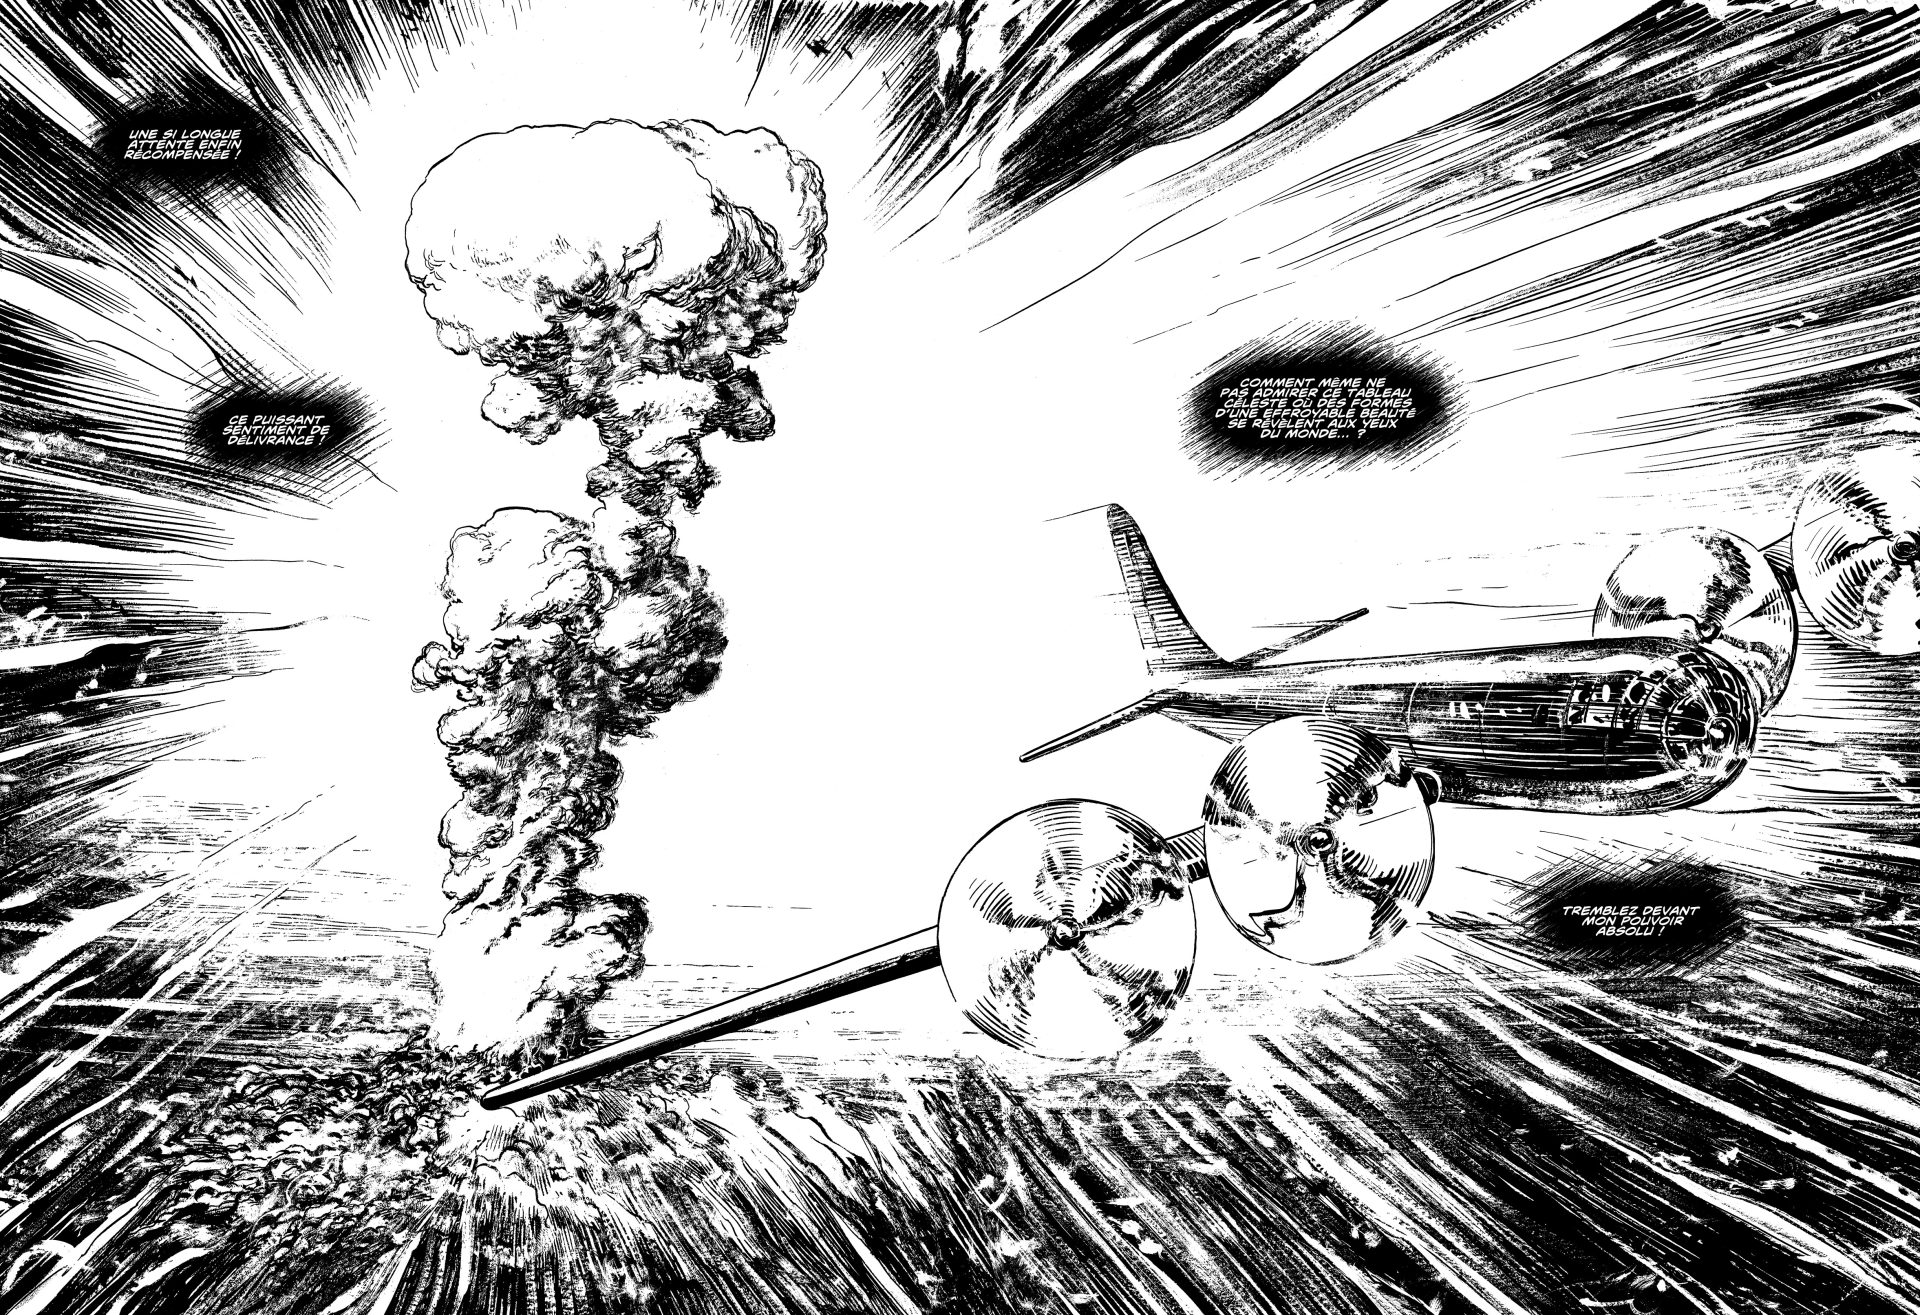 Une case de bande dessinée à l'encre noir sur papier blanc montrant une scène de guerre avec un avion et une grosse explosion.